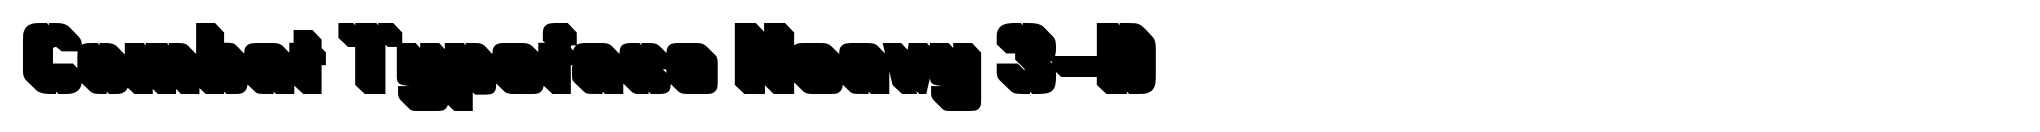 Combat Typeface Heavy 3-D image